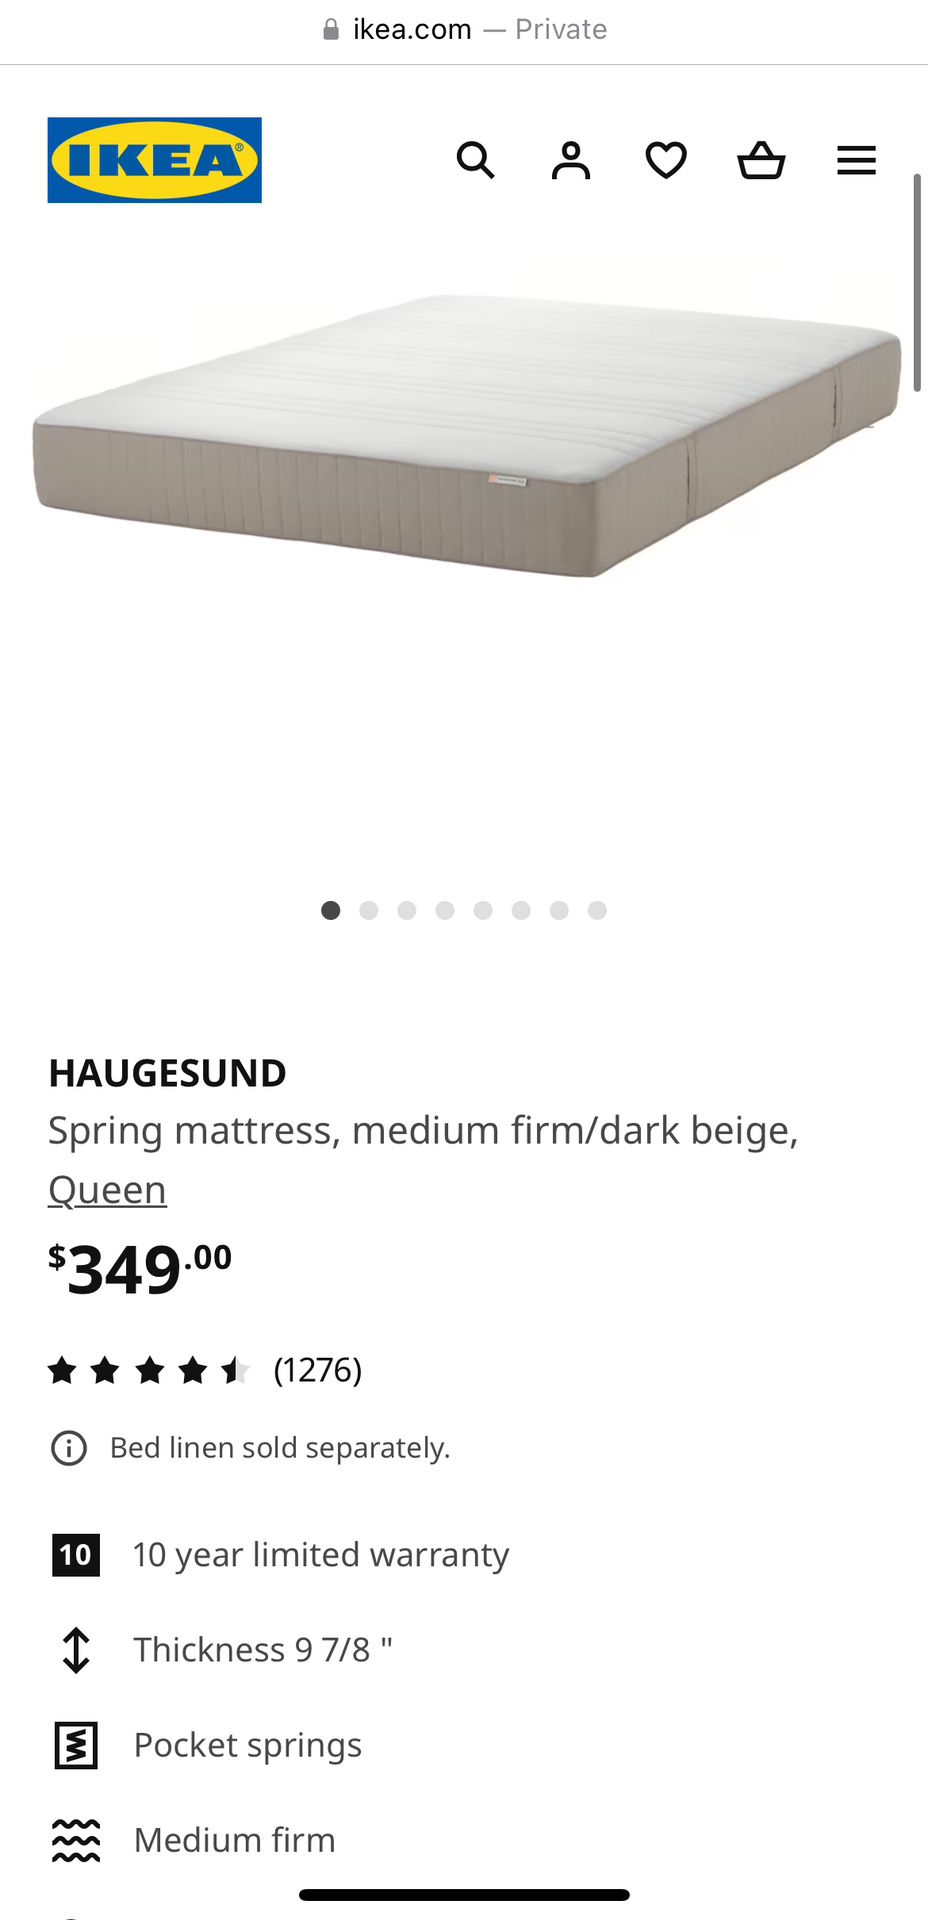 Ikea Haugesund Queen Mattress 